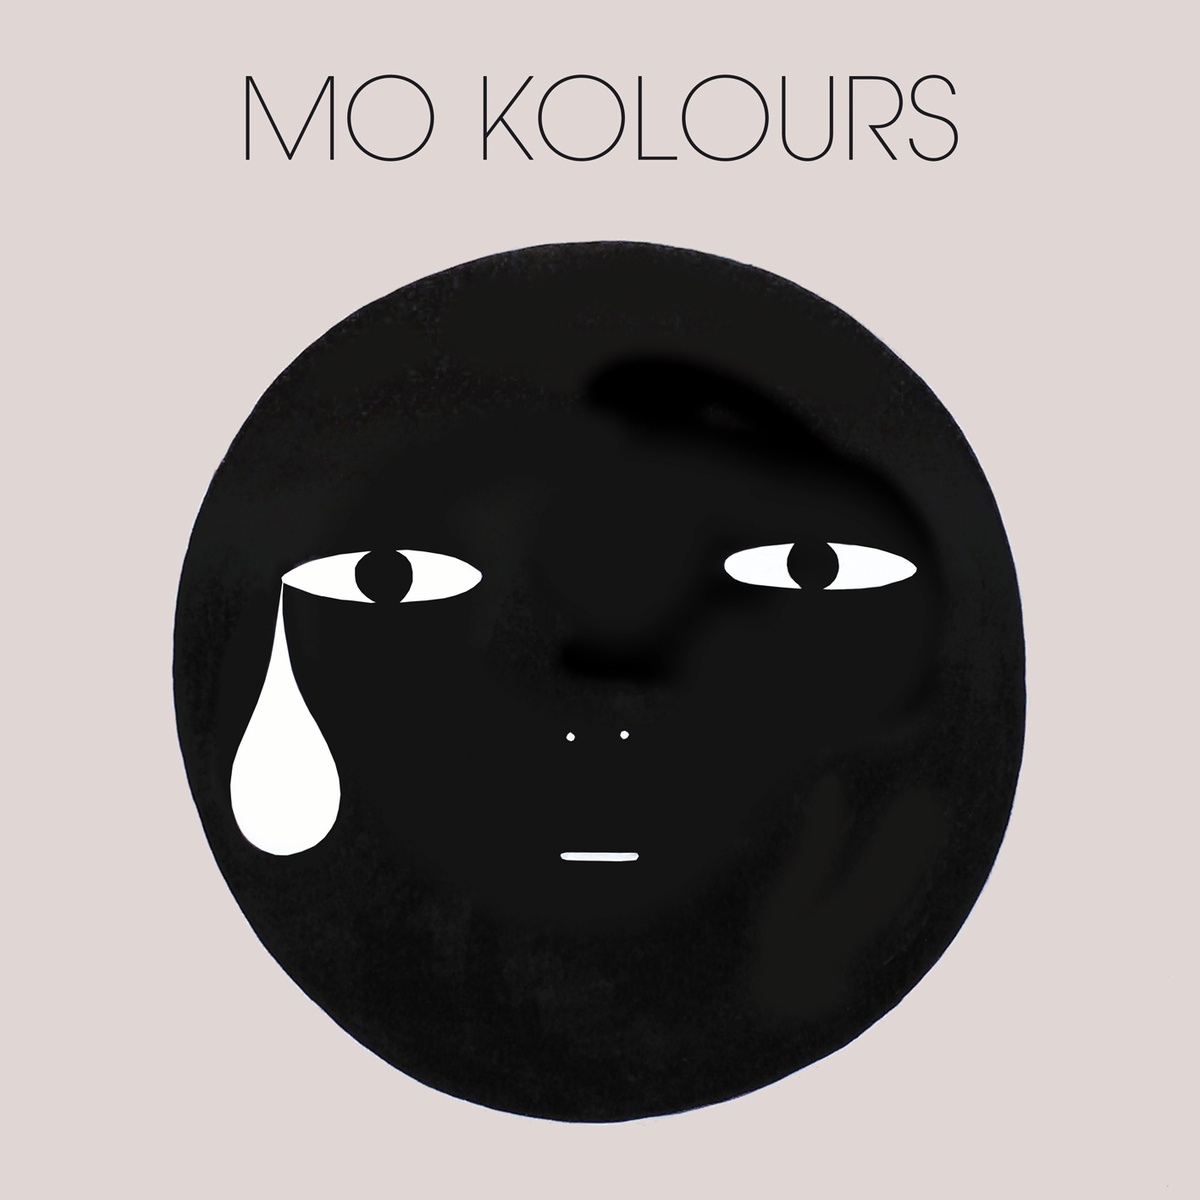 Mo Kolours - "Mo Kolours" (Release)